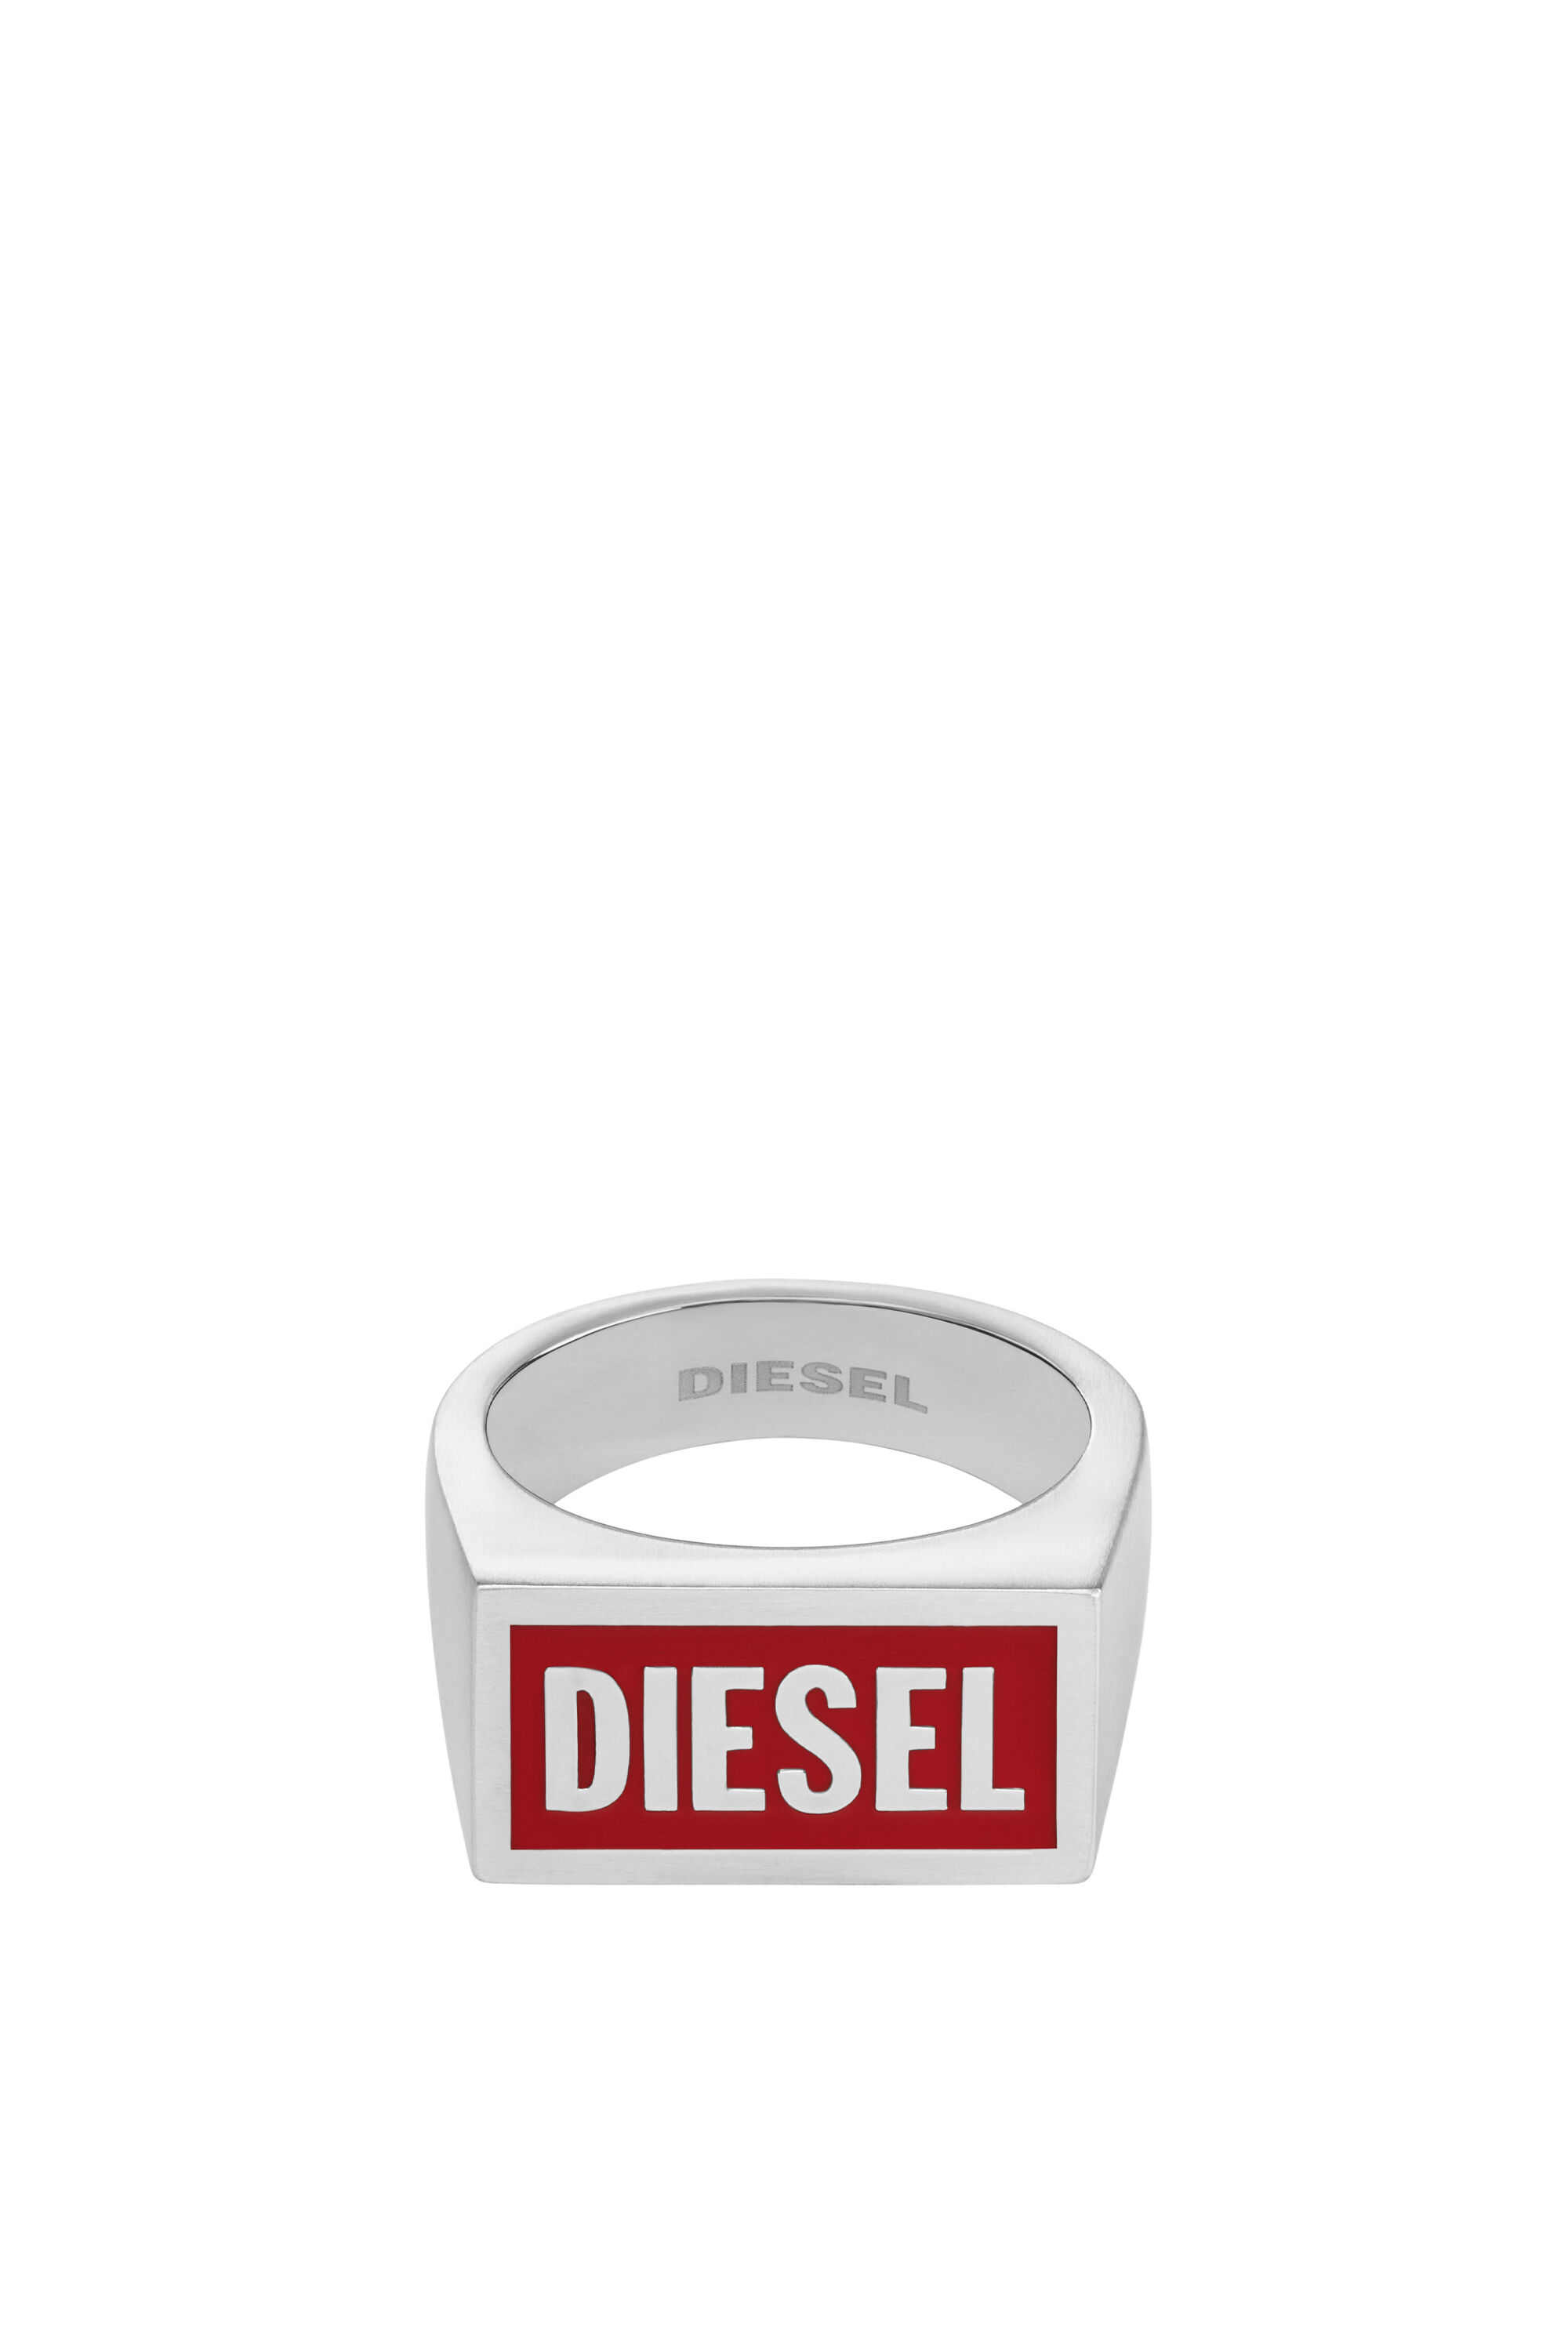 Diesel - DX1366, Silber - Image 2